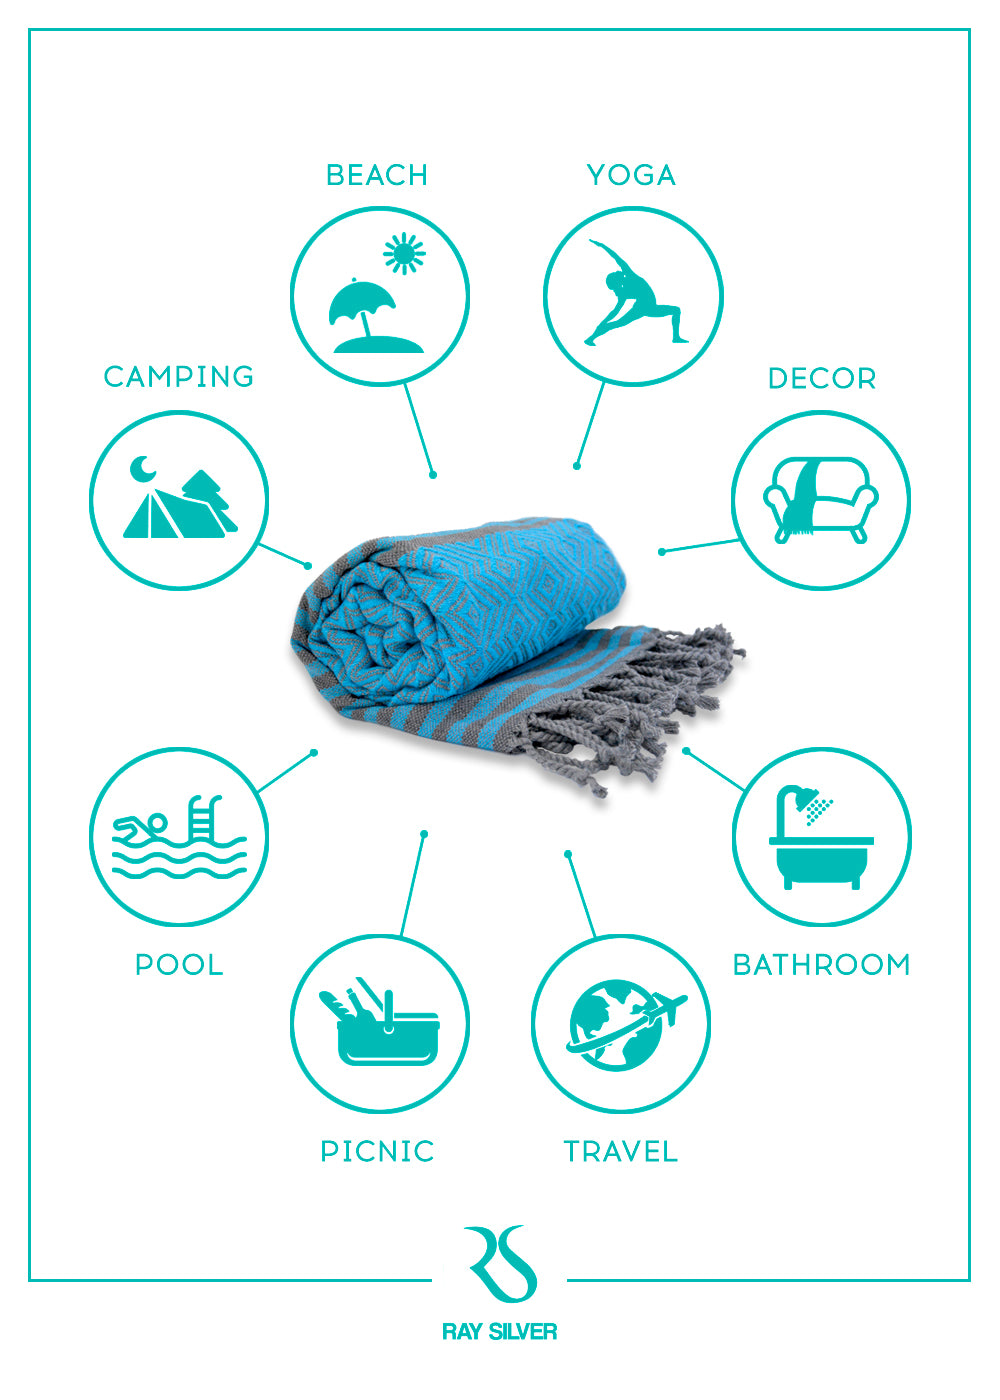 Bath Towels and Wash Cloths (Blue/Grey)